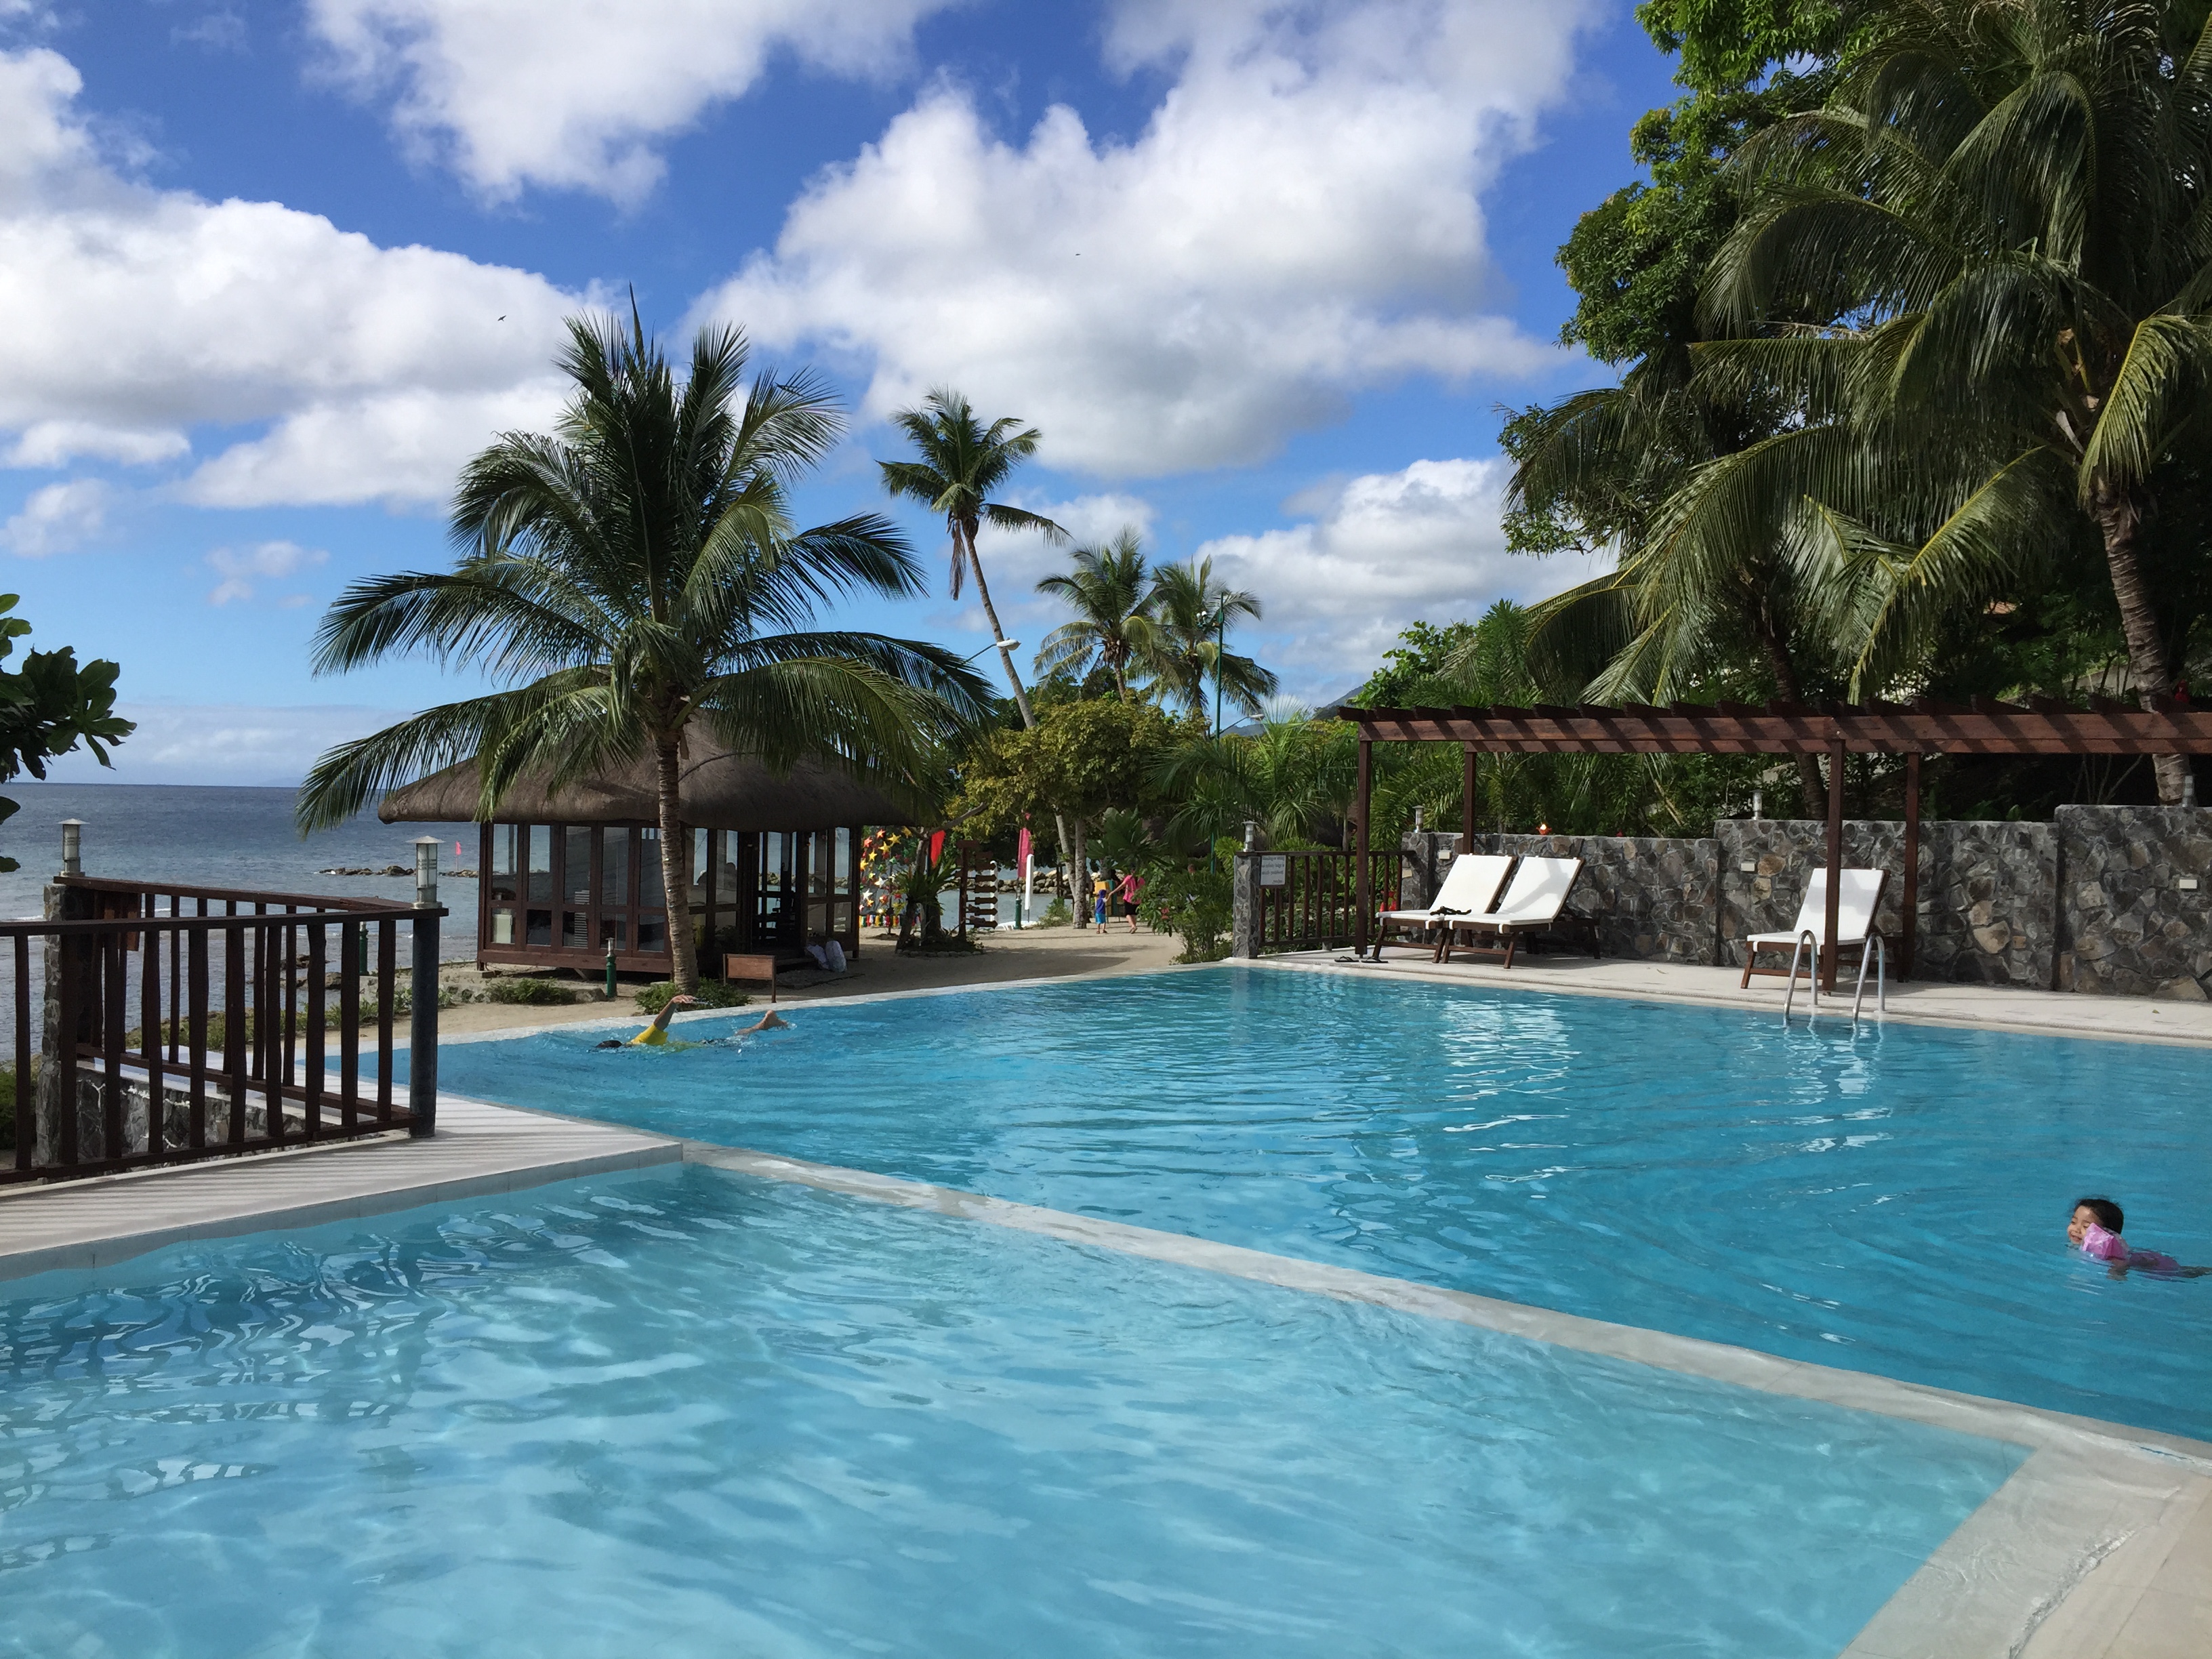 Laiya Palm Beach Resort pool